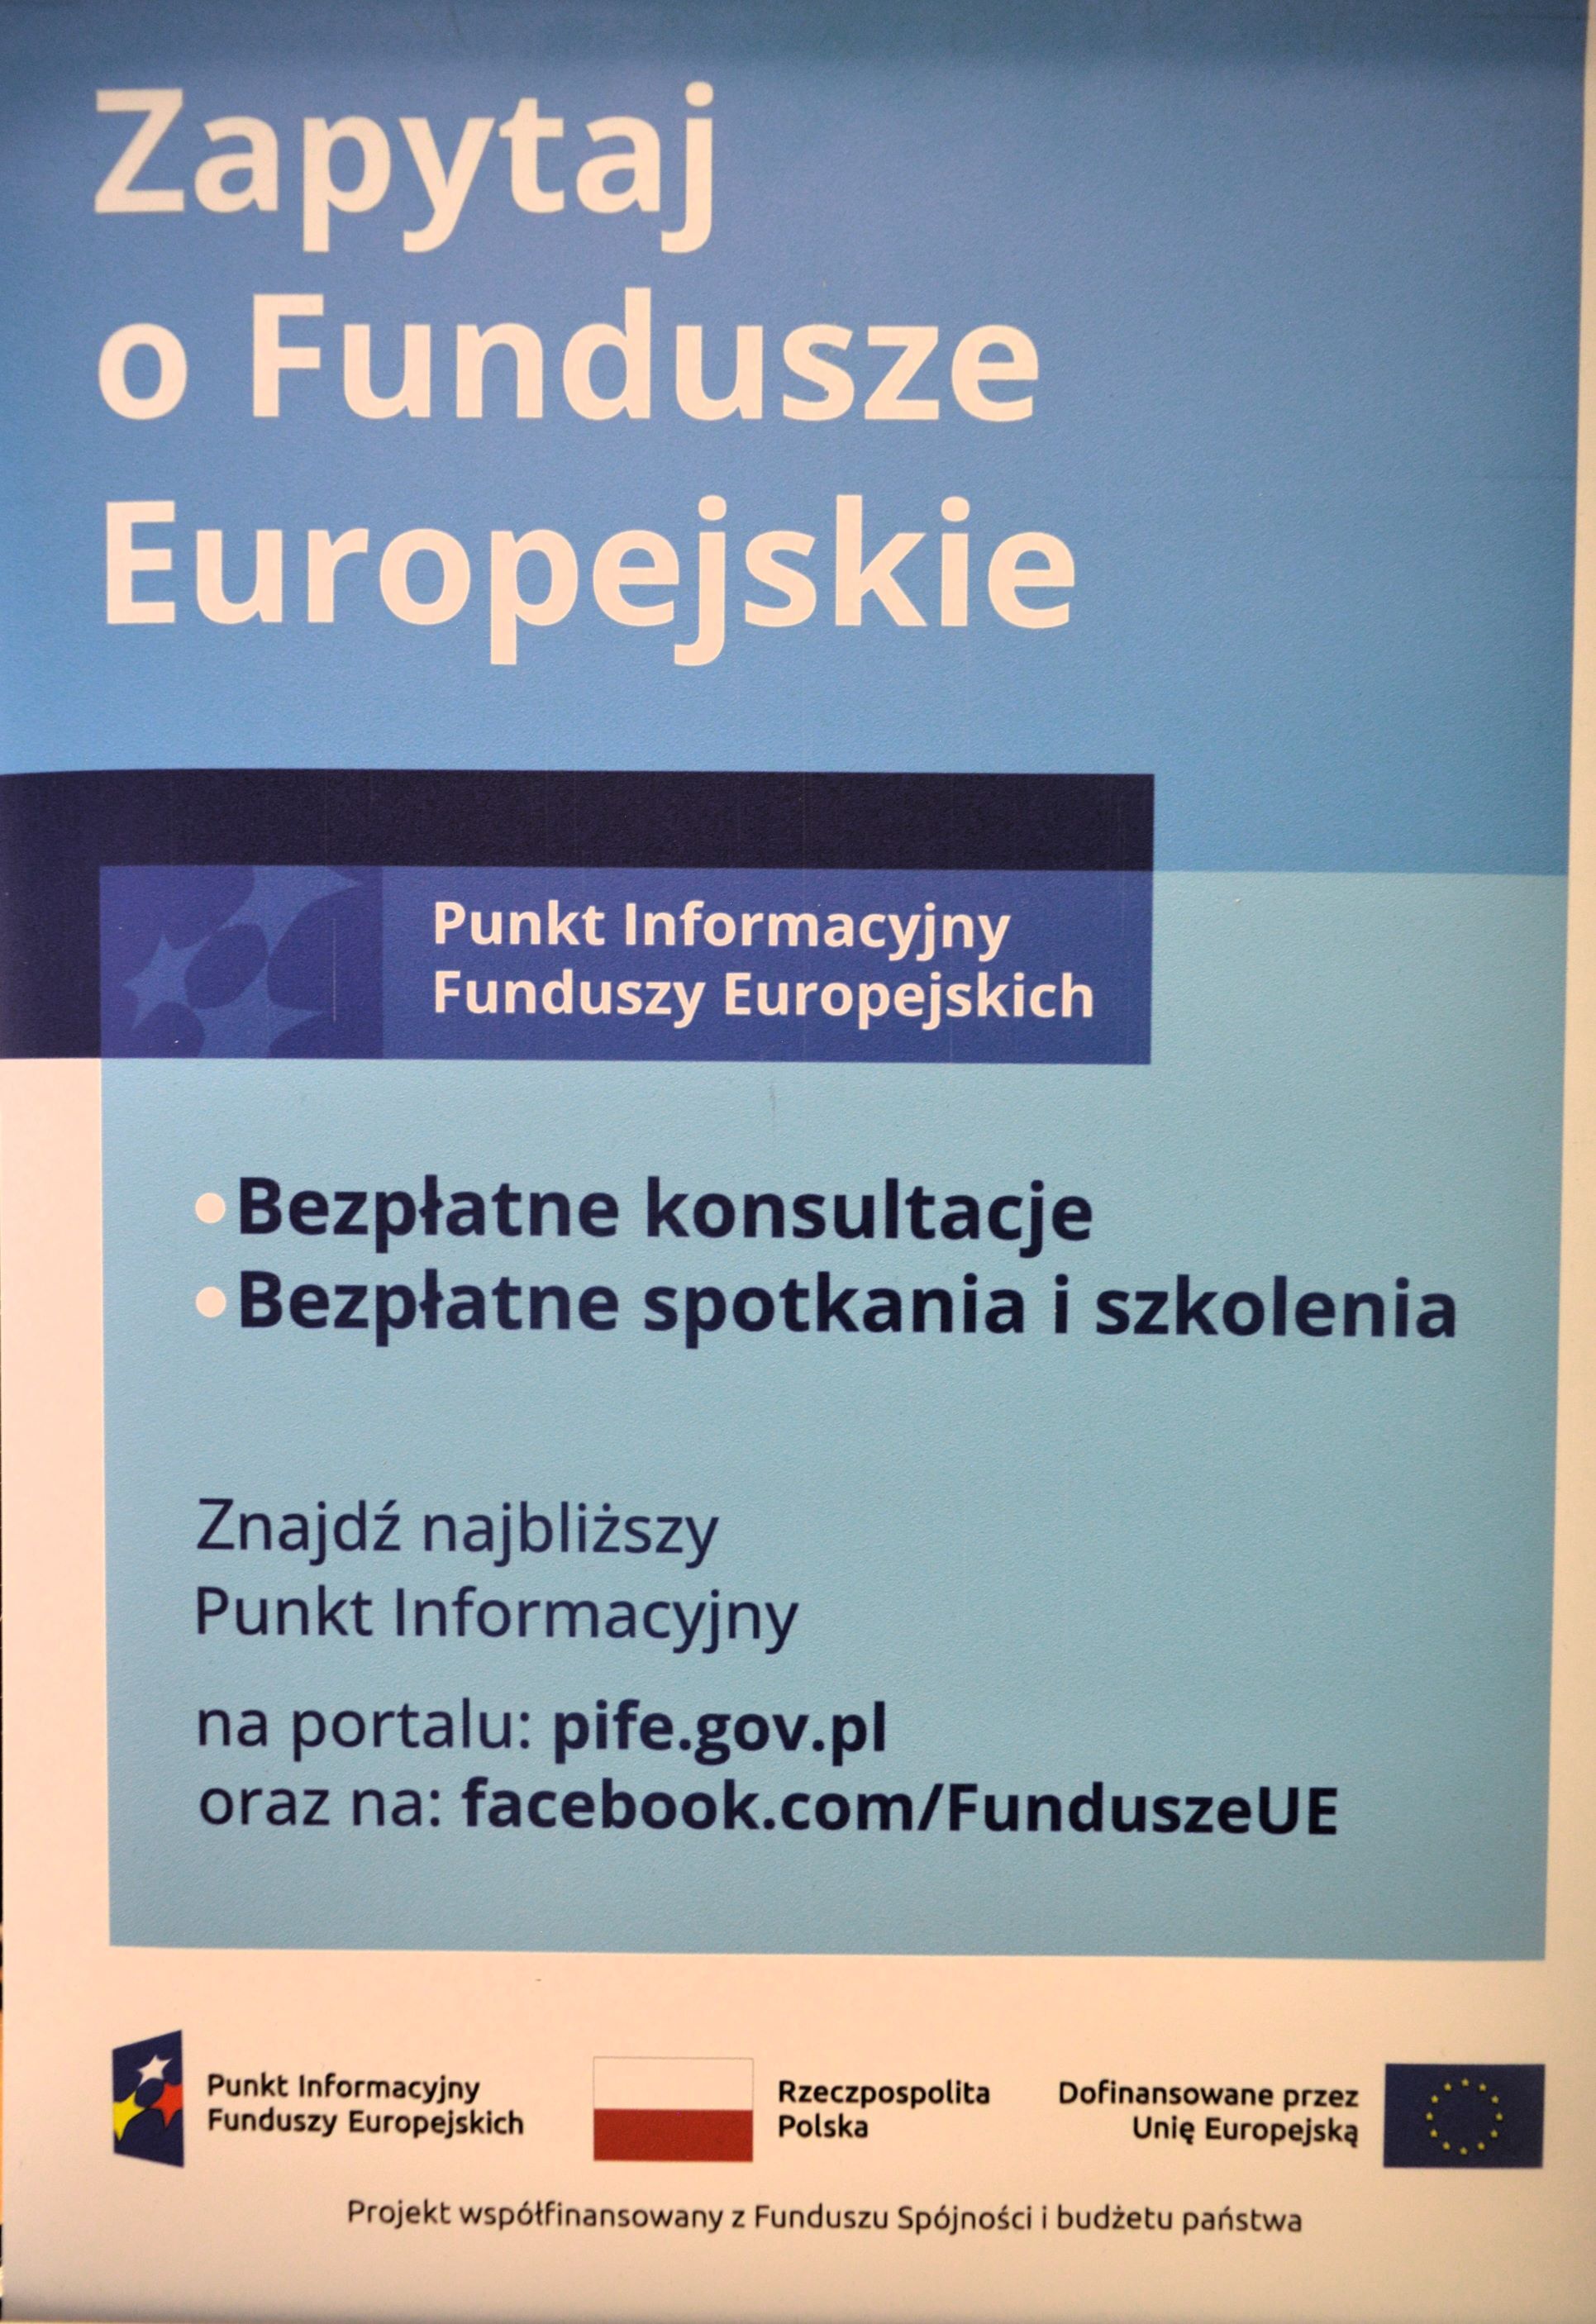 Plakat informacyjny z napisem "Zapytaj o Fundusze Europejskie" oraz informacjami o bezpłatnych konsultacjach, szkoleniach i dostępie do informacji online na niebiesko-zielonym tle.